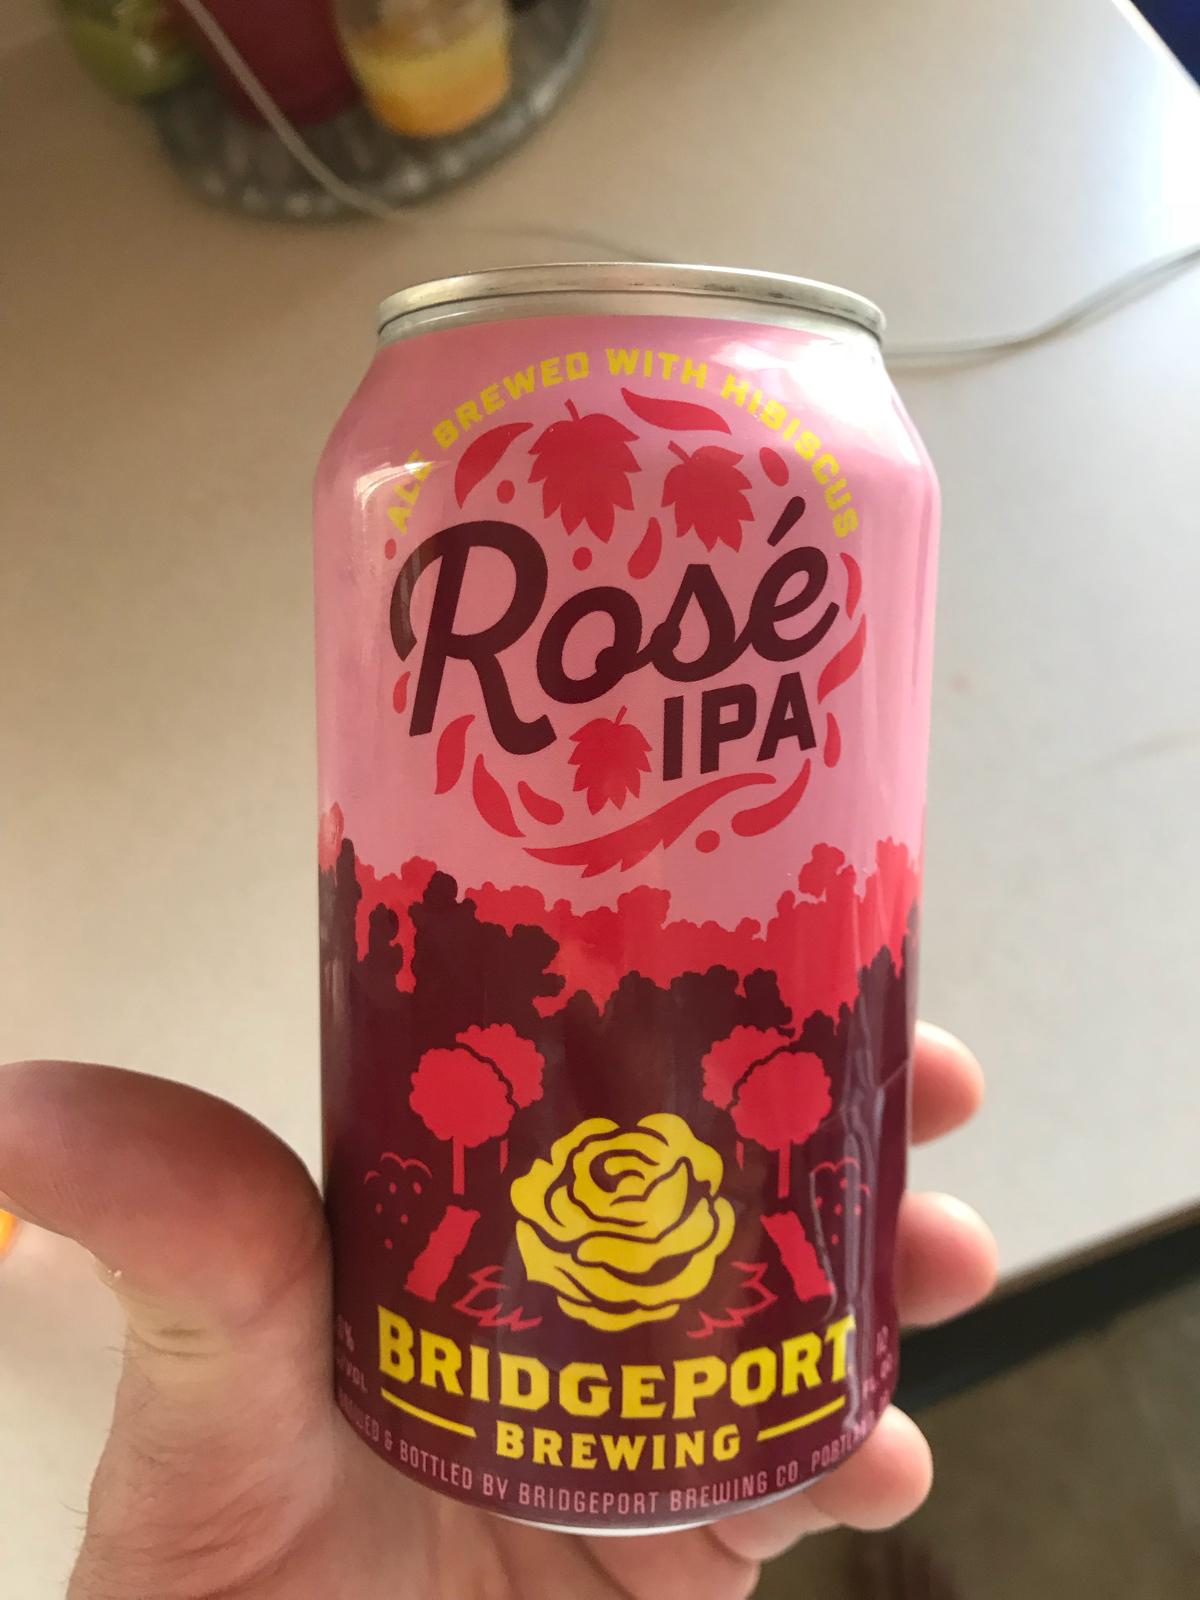 Rose IPA